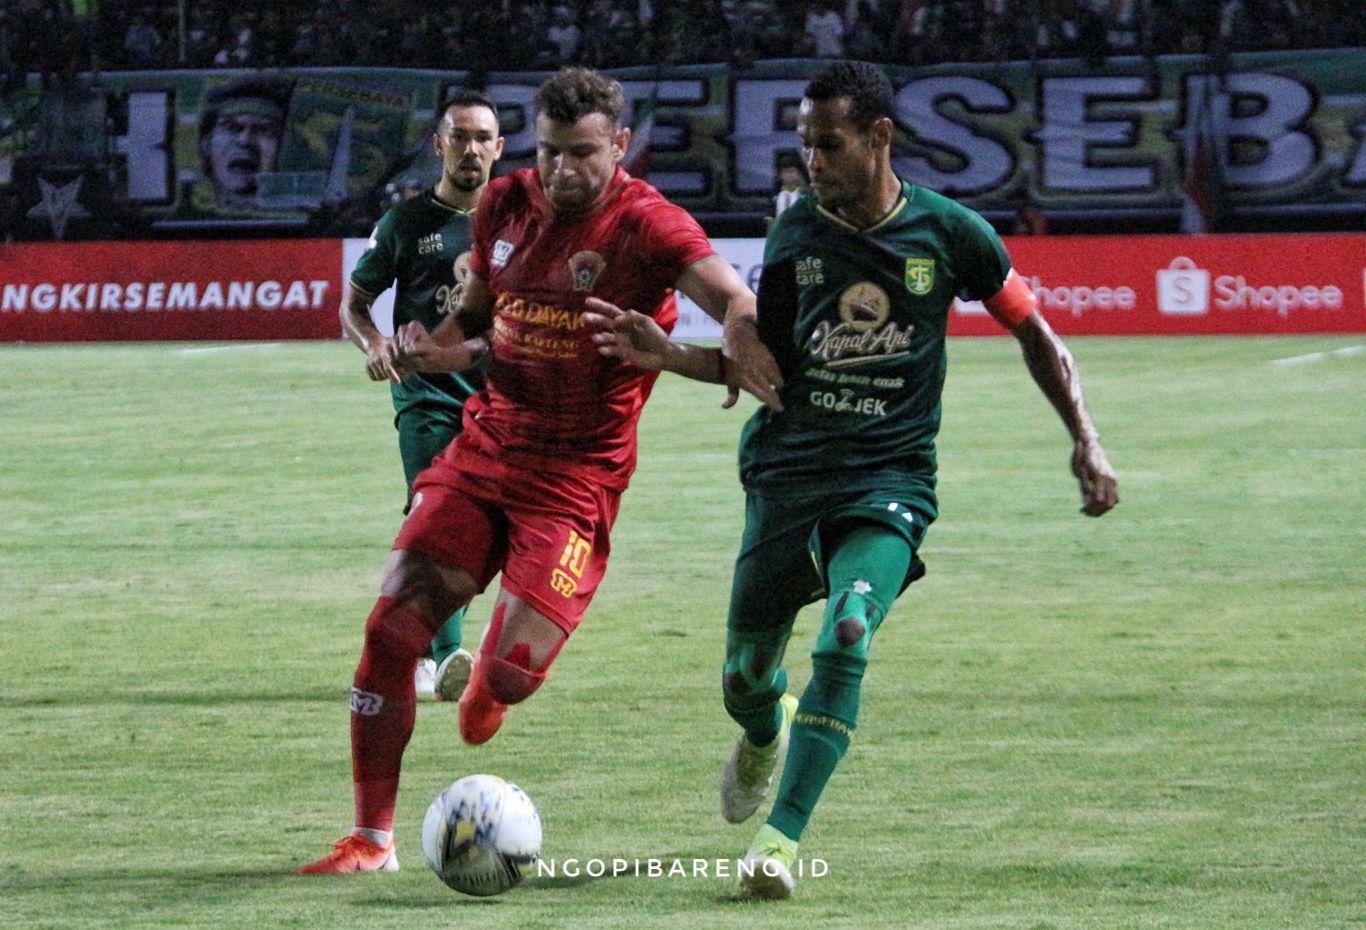 Petemuan Persebaya dengan Kalteng Putra di putaran pertama Liga 1 2019 kemarin. (Foto: Haris/ngopibareng.id)